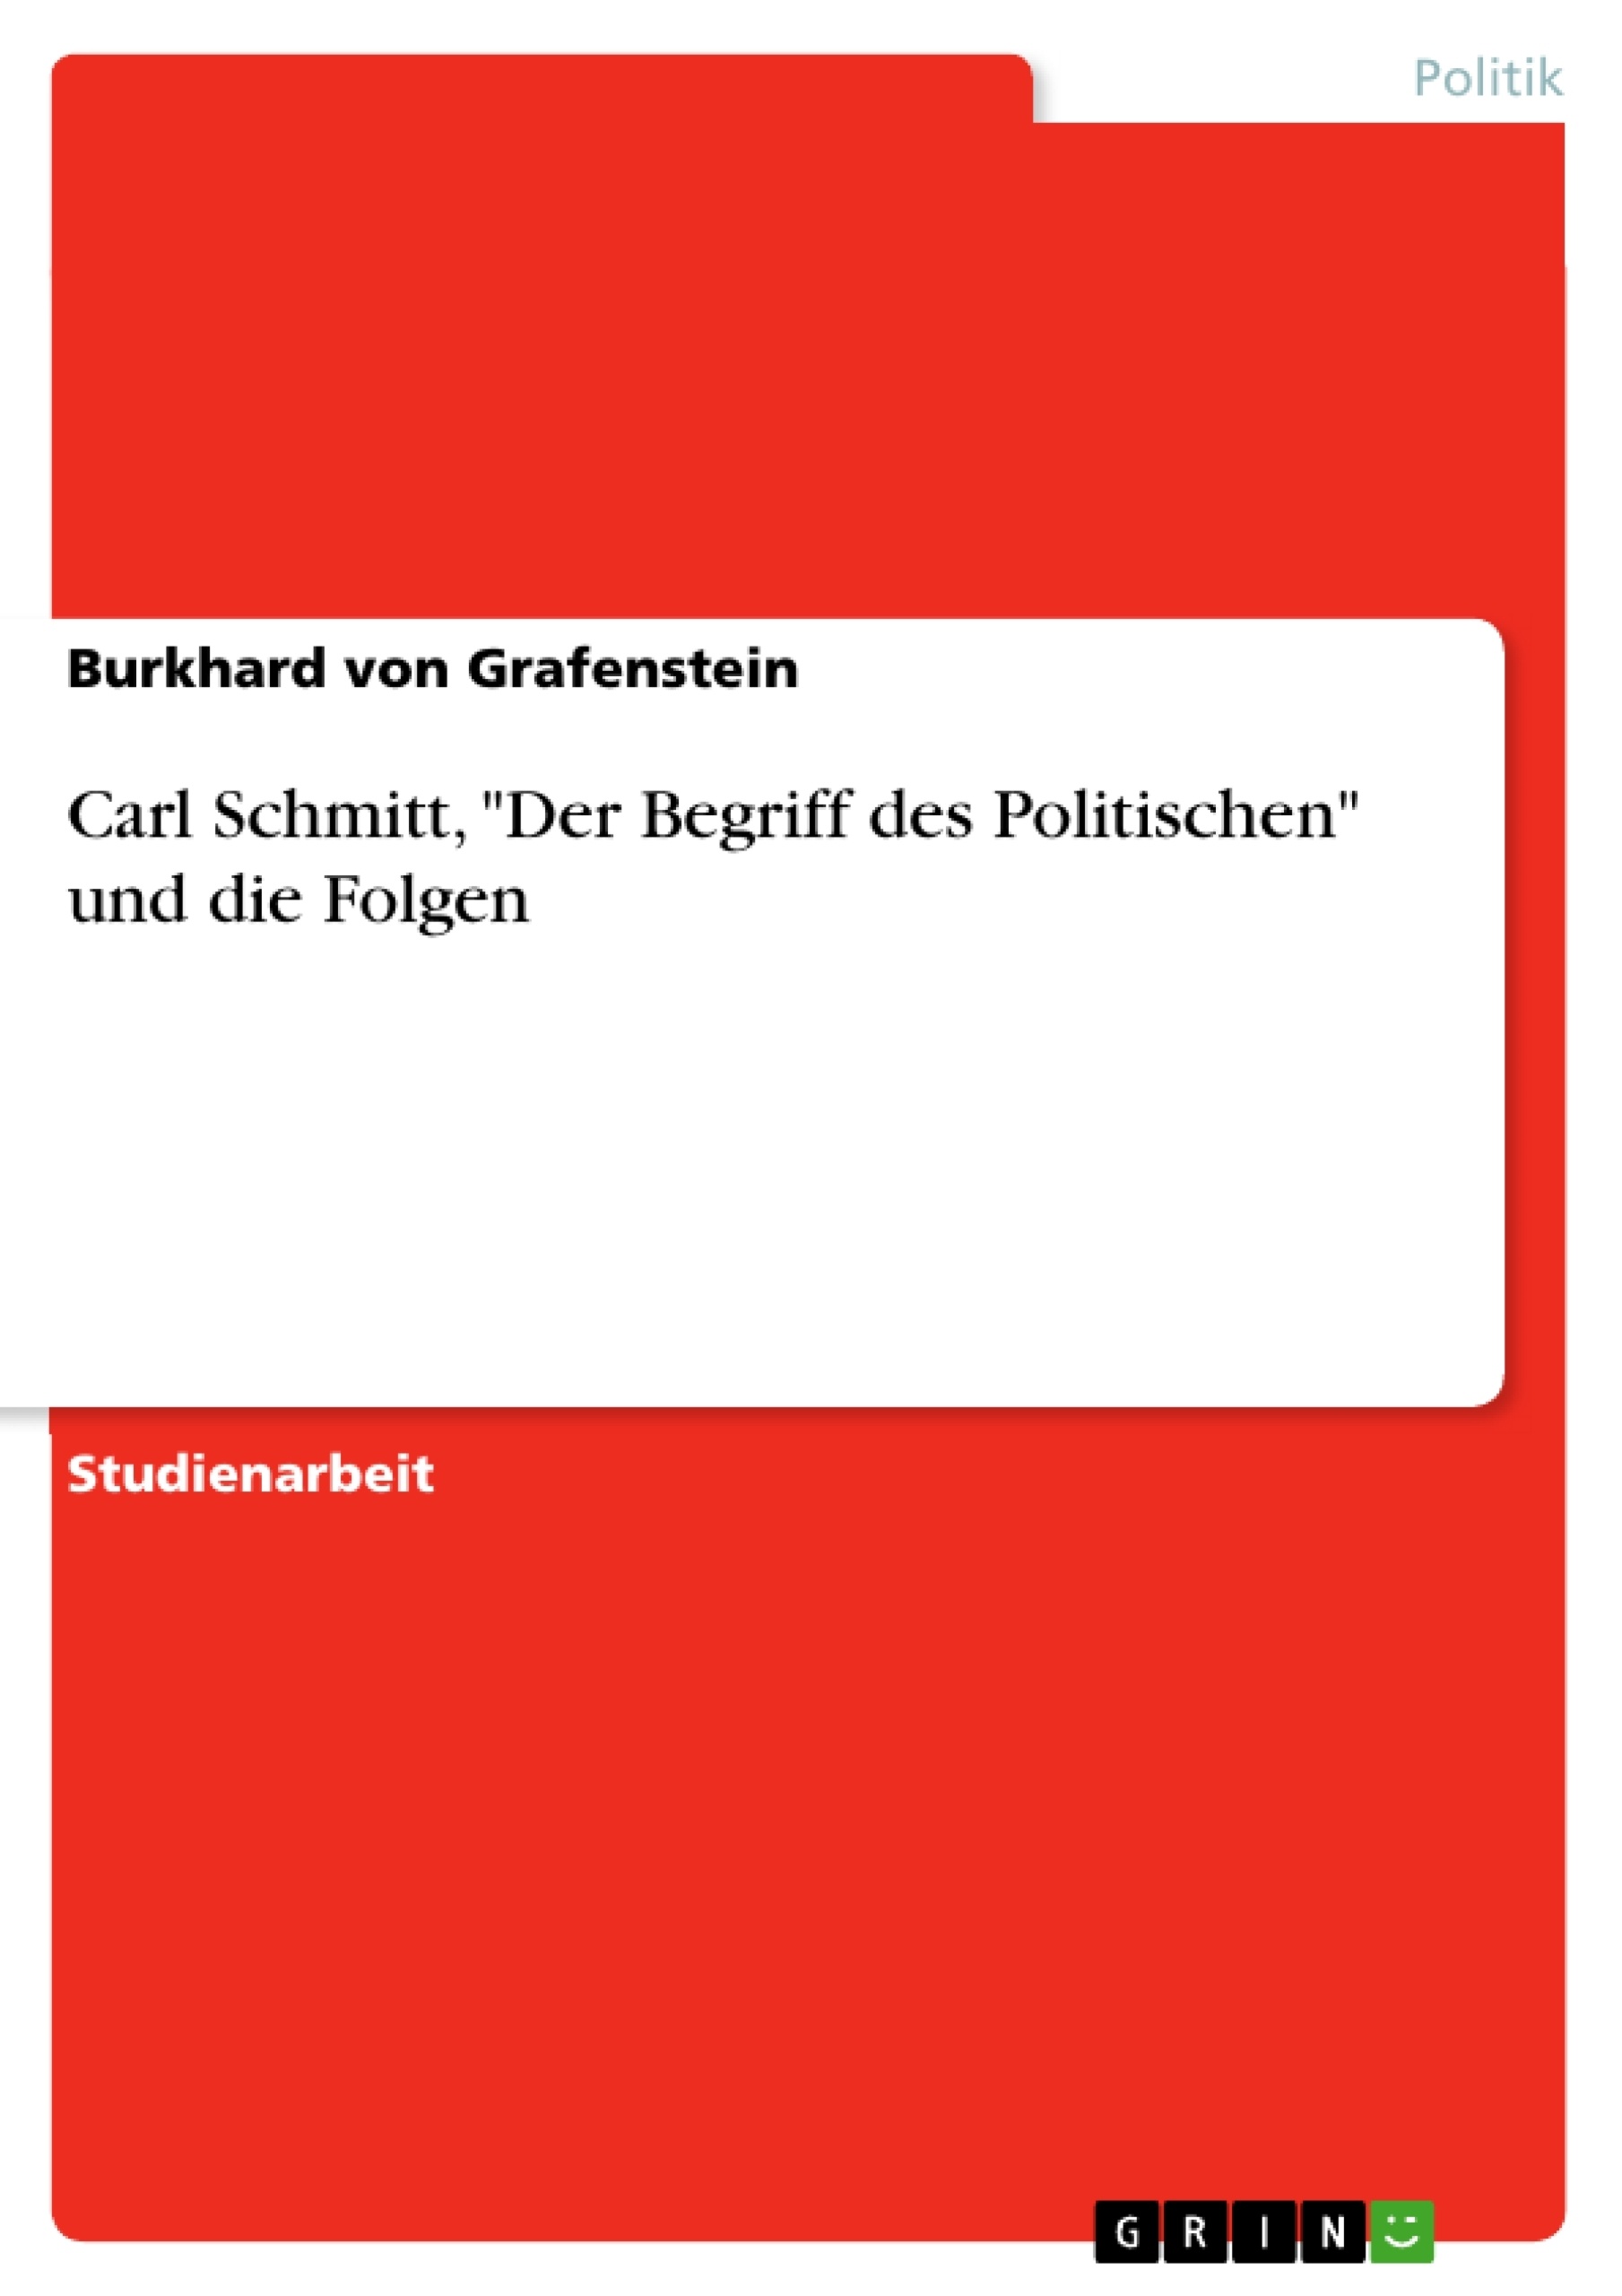 Título: Carl Schmitt, "Der Begriff des Politischen" und die Folgen